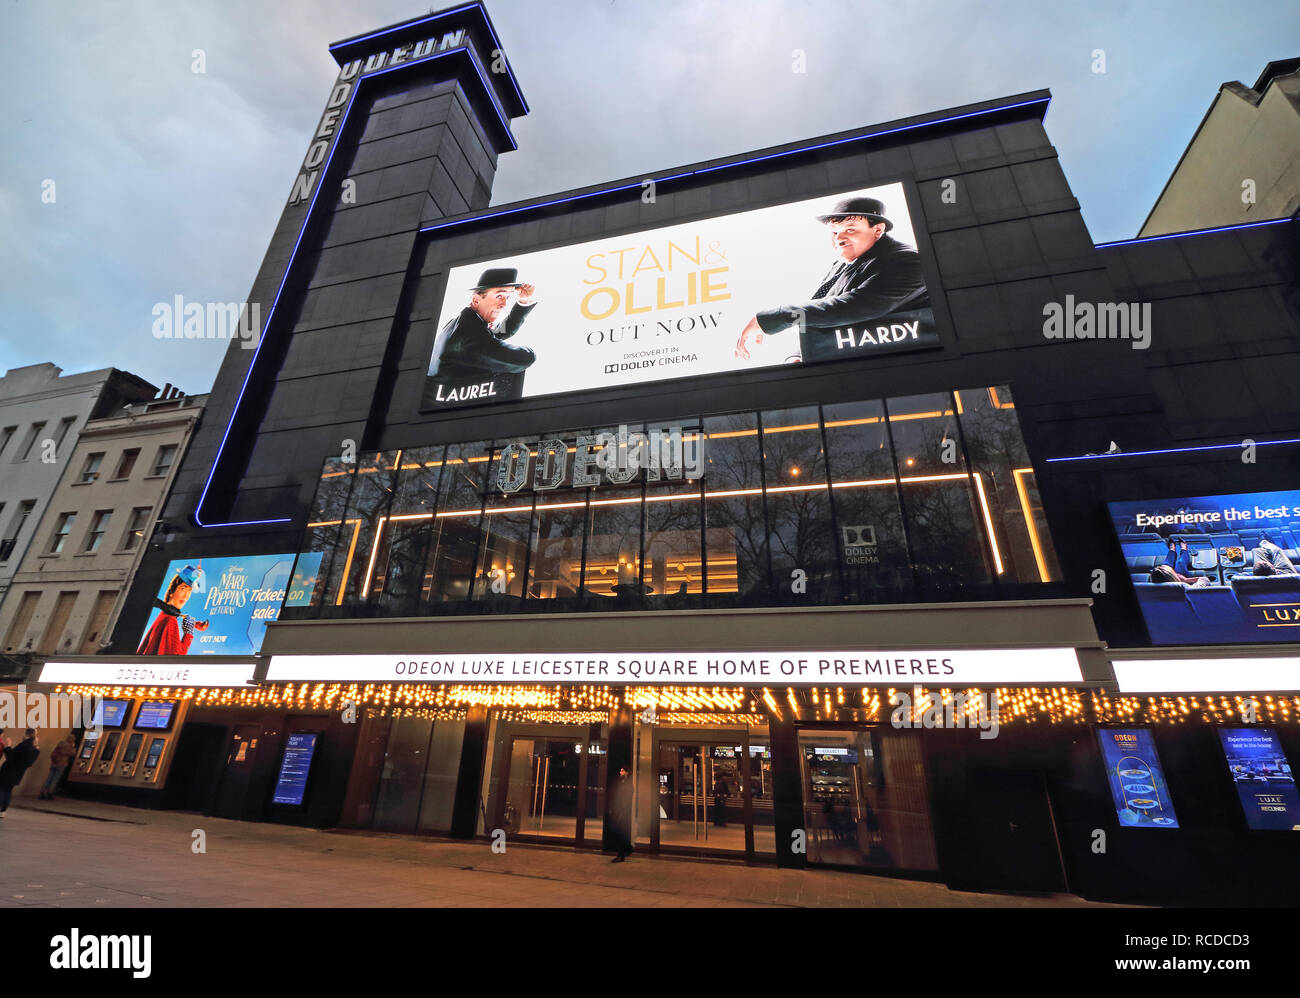 Odeon Leicester Square, iconico home del London Film anteprime, ha recentemente riaperto dopo un £15milioni di riattaccare. Ora denominato Luxe Odeon Leicester Square, il cinema nel cuore del West End, è stata la casa di centinaia di Mondiali ed Europei di anteprime di film. Il più grande a schermo unico cinema nel Regno Unito è stato completamente aggiornato per combinare Odeon reclinabili Luxe sedi con il Dolby Cinema. Foto Stock